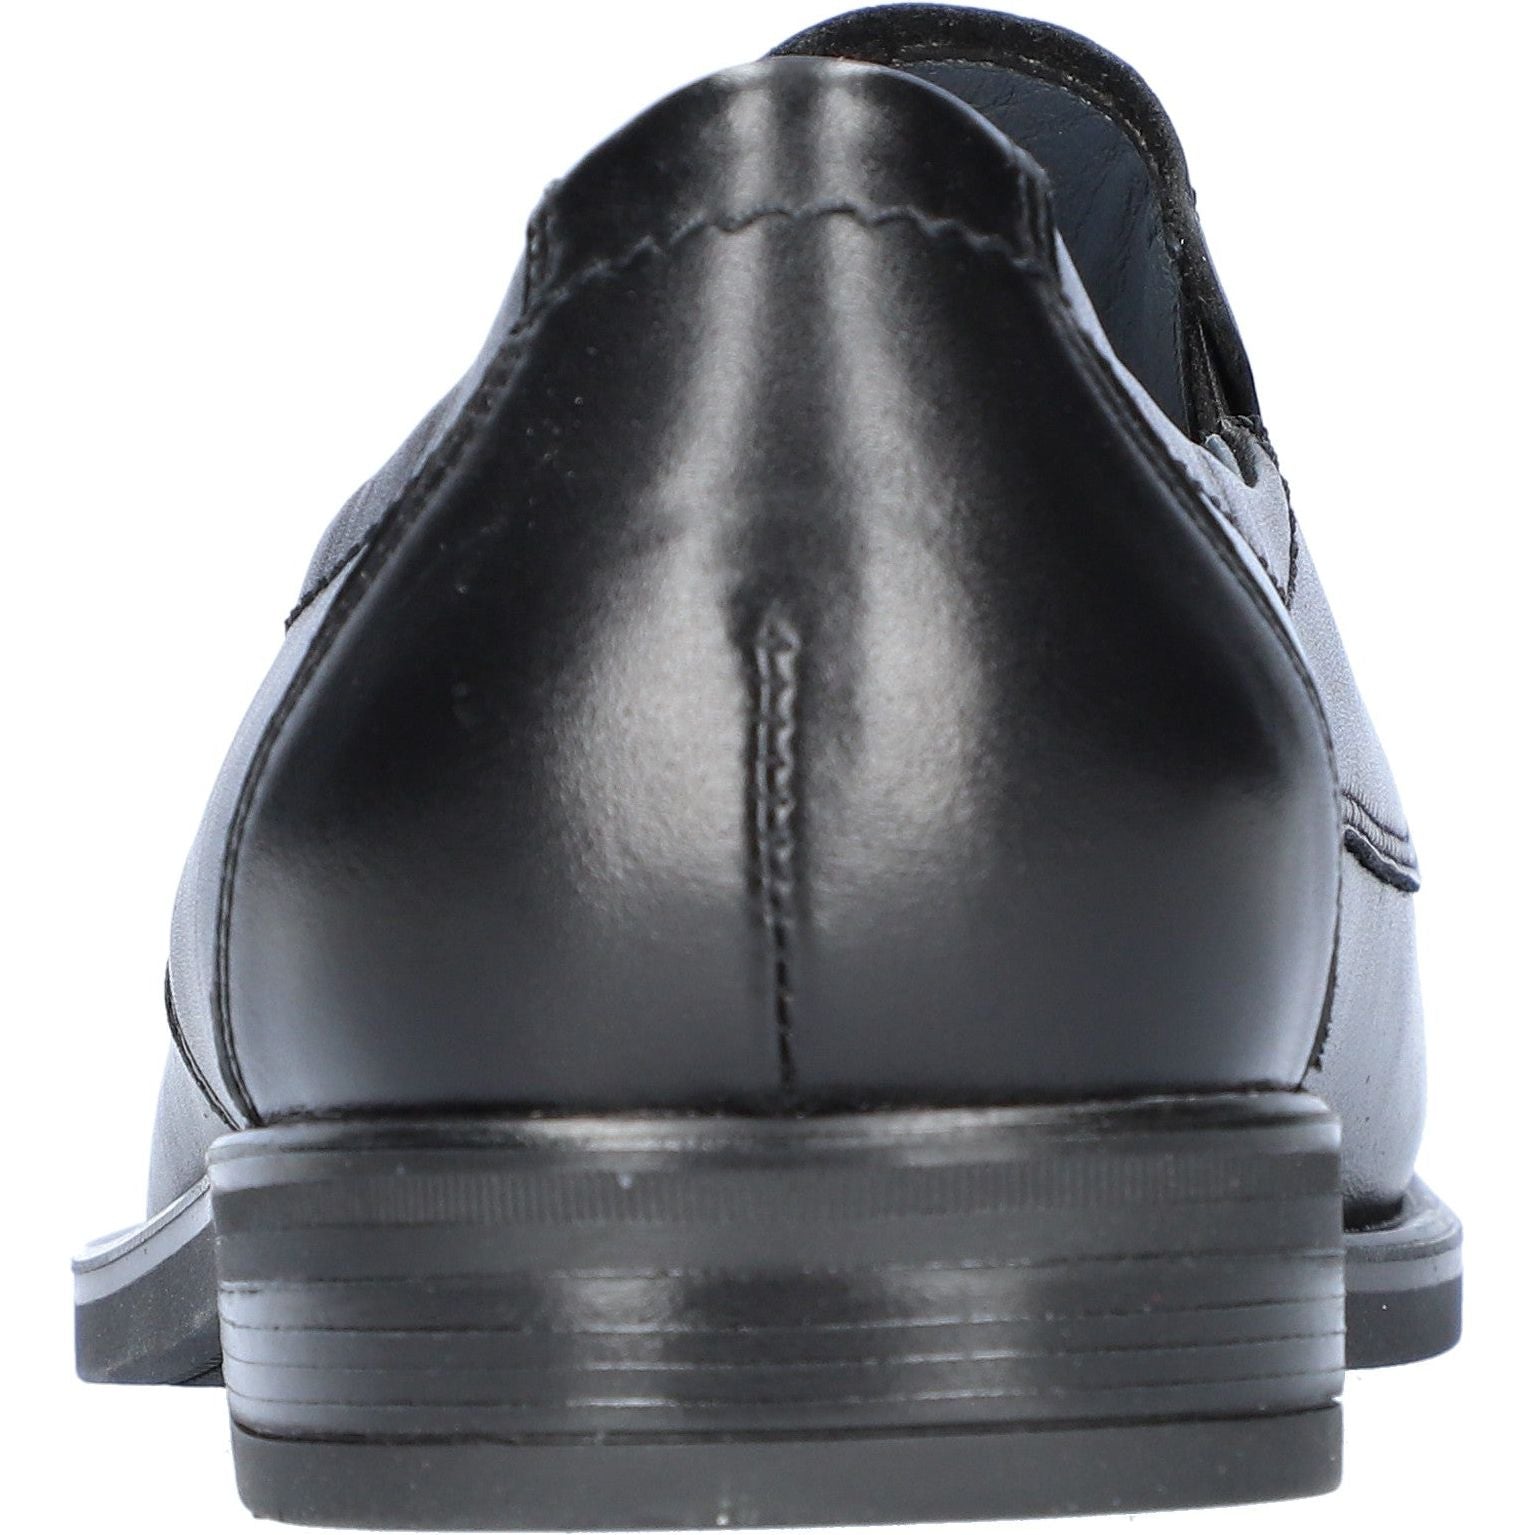 Waldlaufer Henry (319501) - Mens Formal Shoe in Black.&nbsp; Waldlaufer Shoes | Wide Fit Shoes | Wiseman Shoes | Bantry | West Cork | Shoe Shop | Munster| Ireland